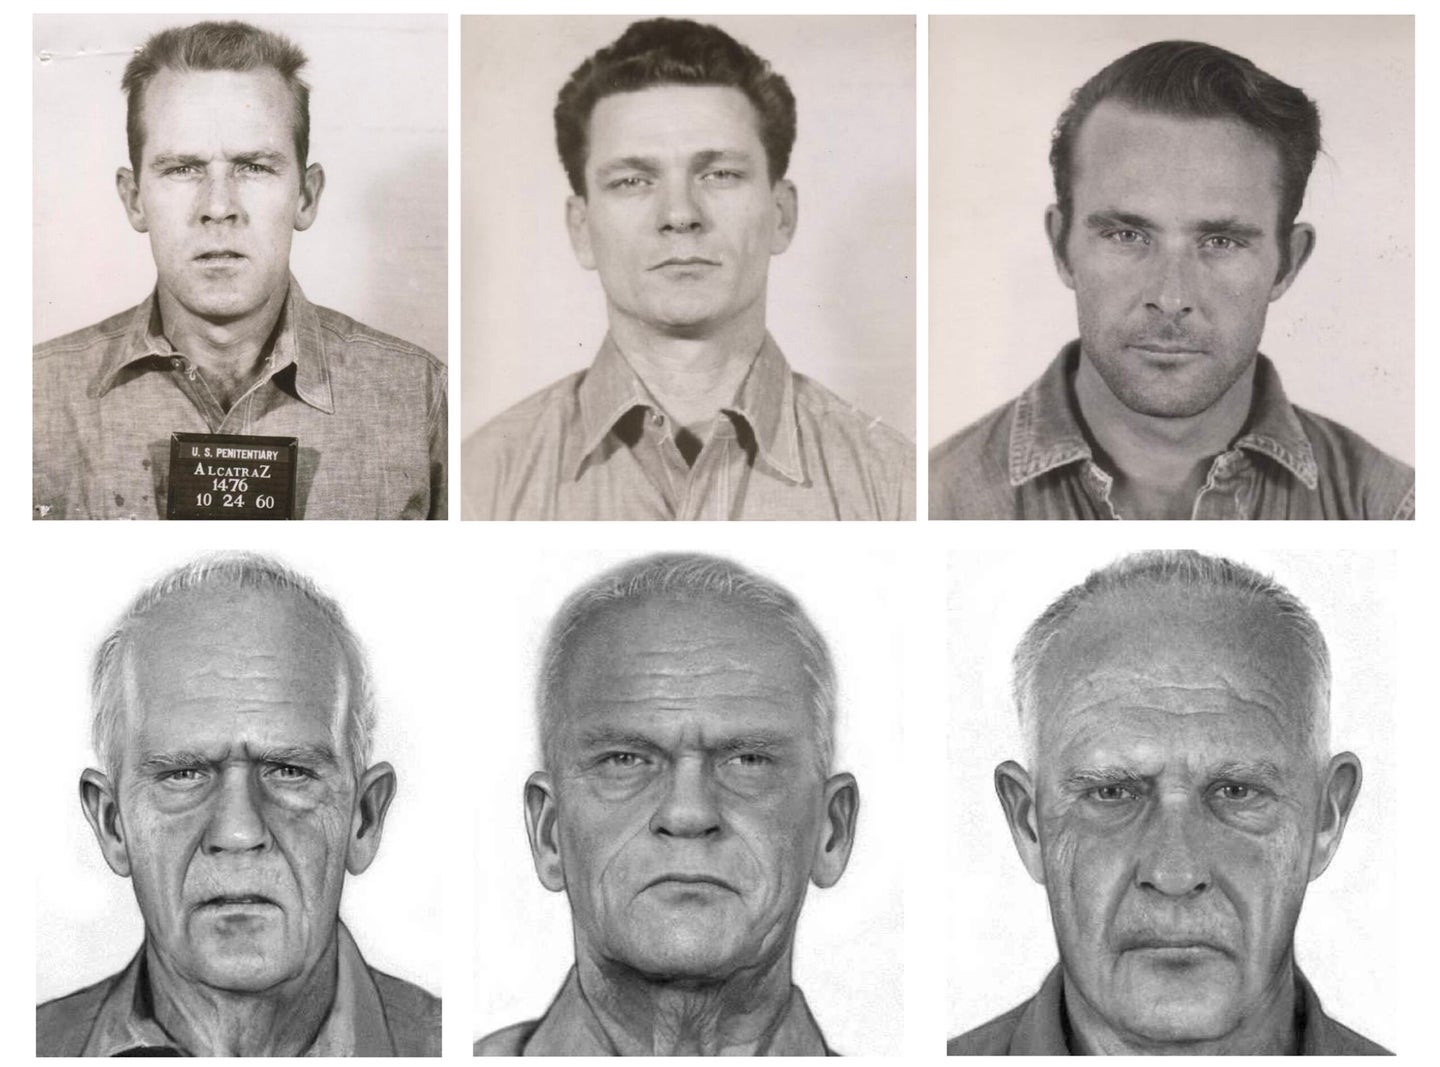 Aged photos of Alcatraz escapees